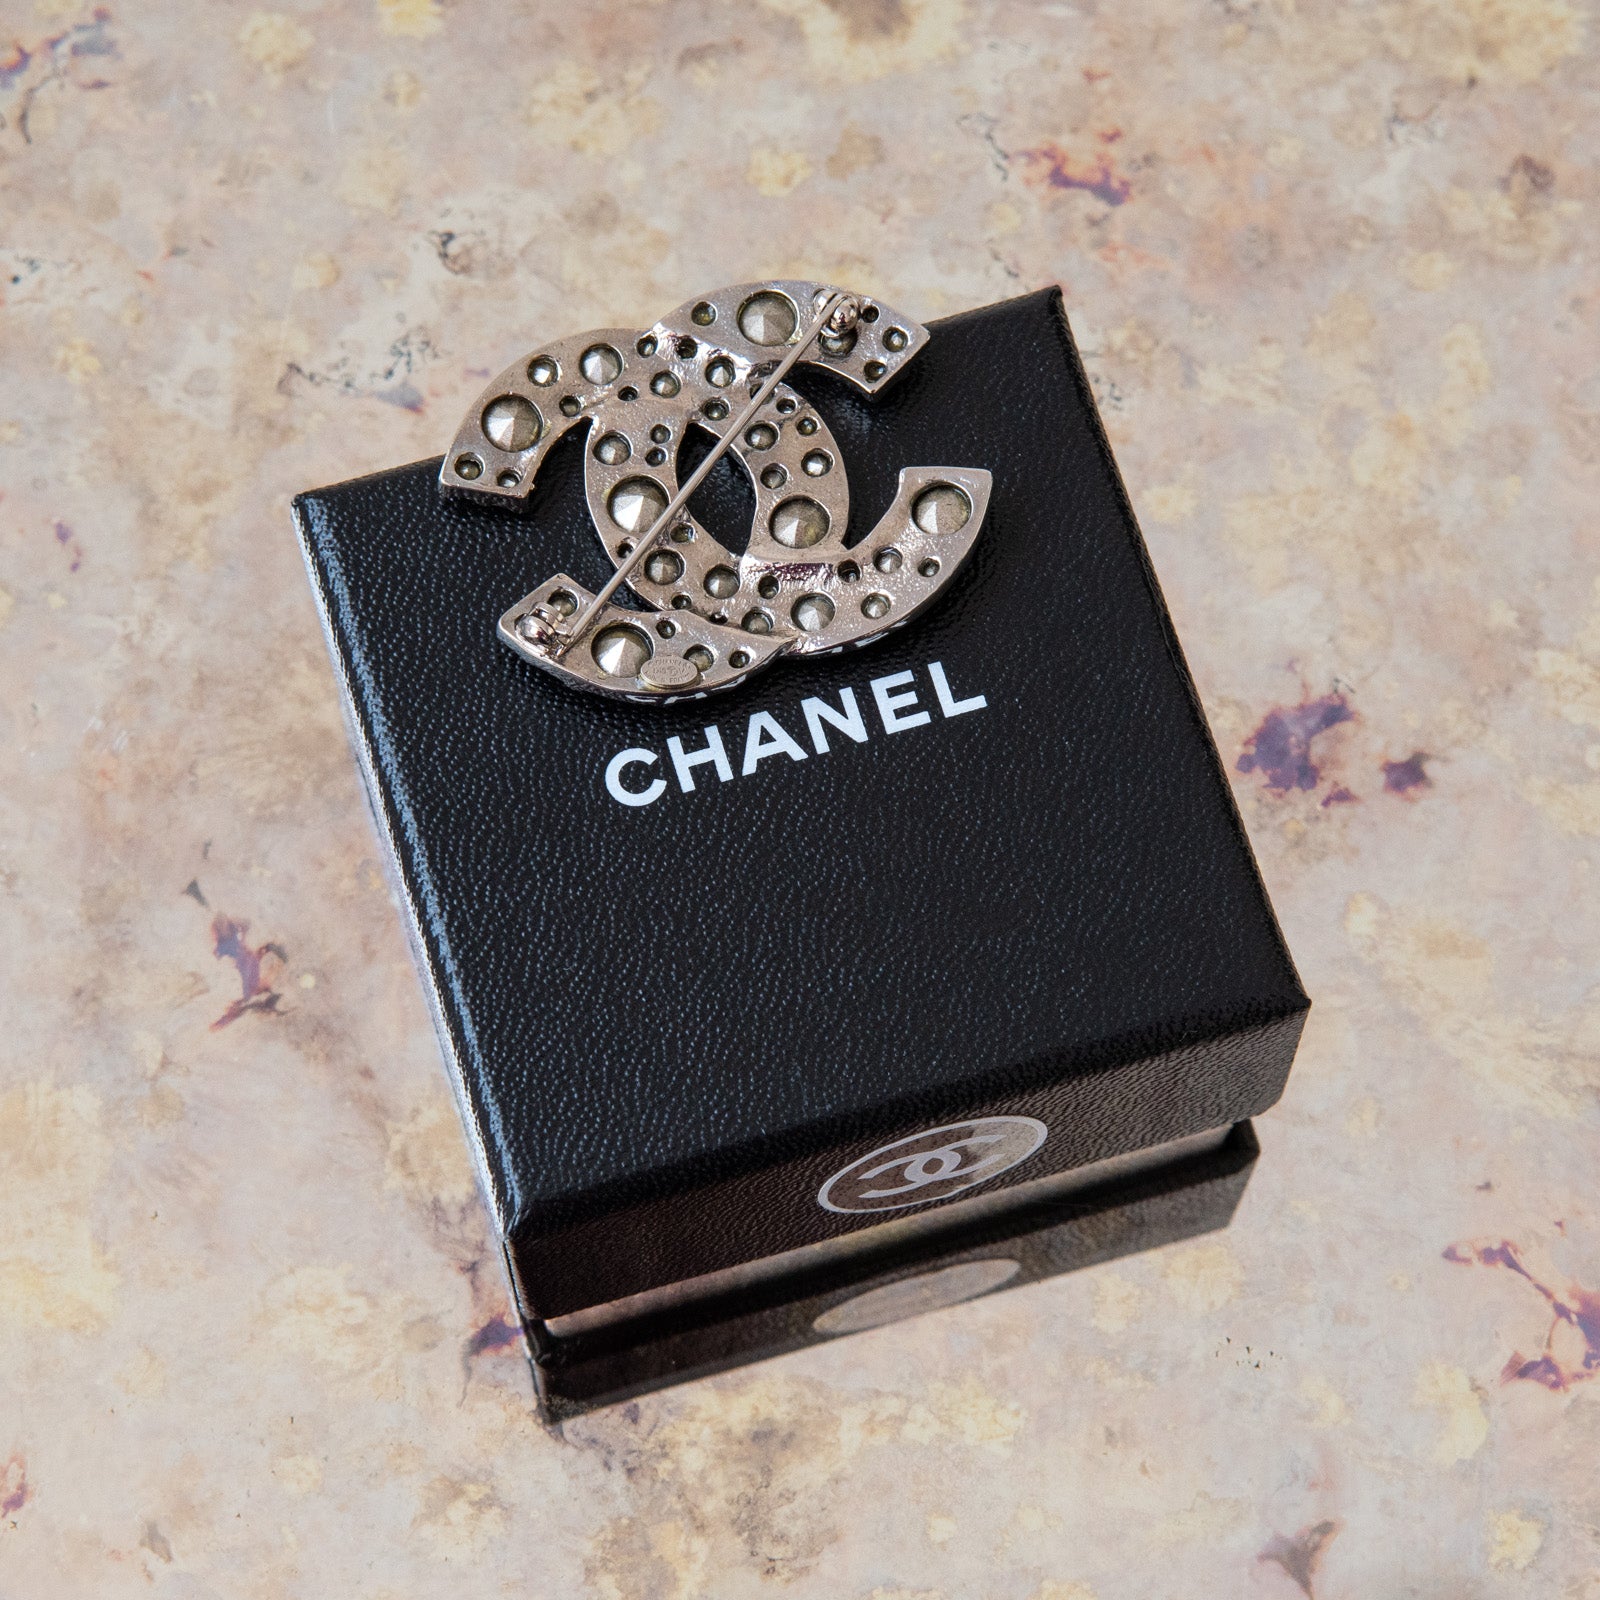 Chanel Diamante Brooch - Image 6 of 6